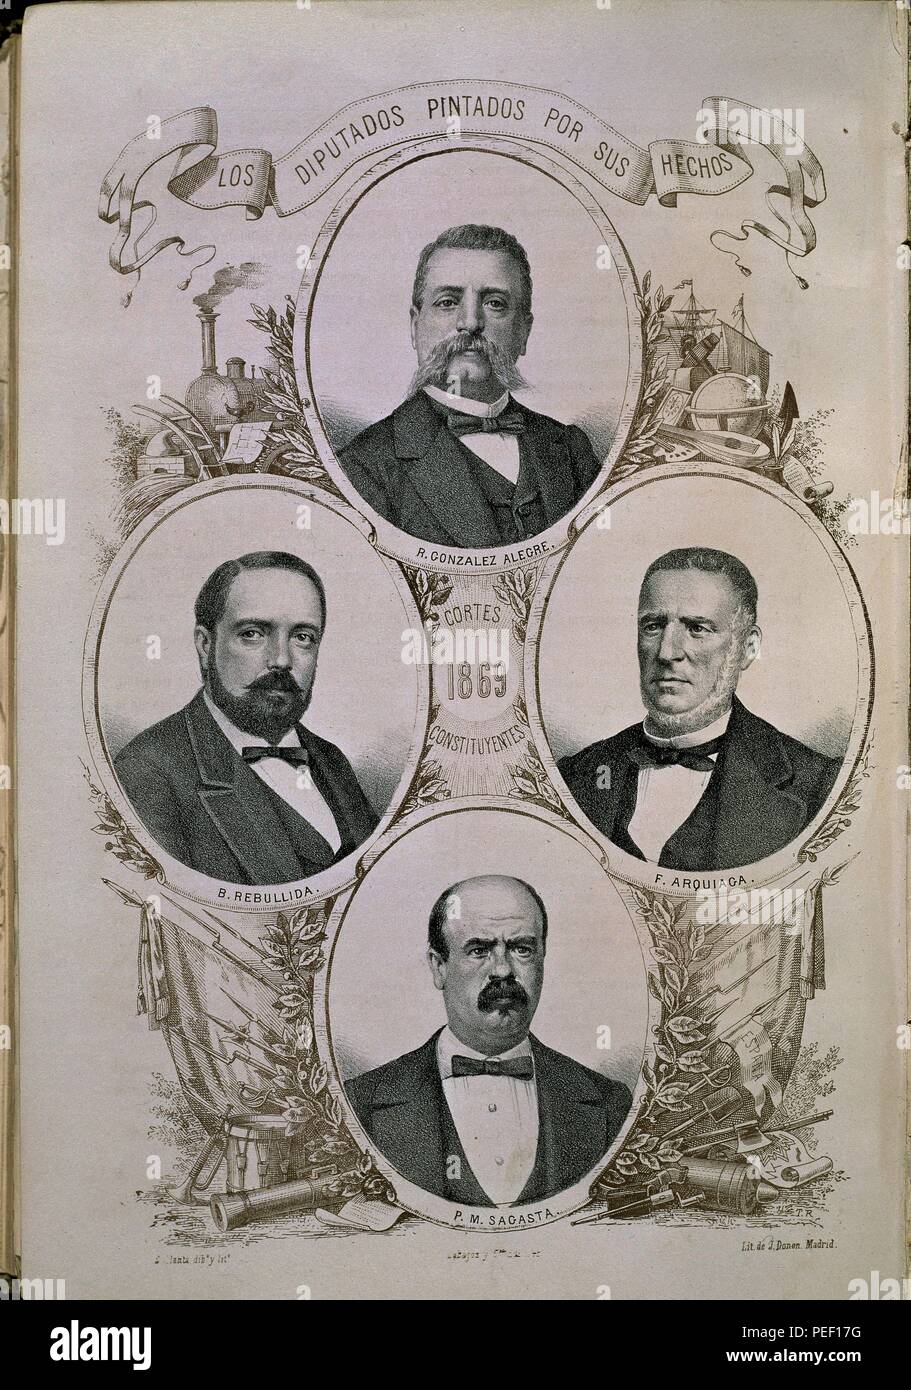 DIPUTADOS PINTADOS POR SUS HECHOS - R GONZALEZ ALEGRE- B REBULLIDA- F ARQUIAGA Y P M SAGASTA - CORTES CONSTITUYENTES DE 1869. Autore: B. Llanta (XIX sec.). Posizione: Congreso de los Diputados-ARCHIVO, MADRID, Spagna. Foto Stock